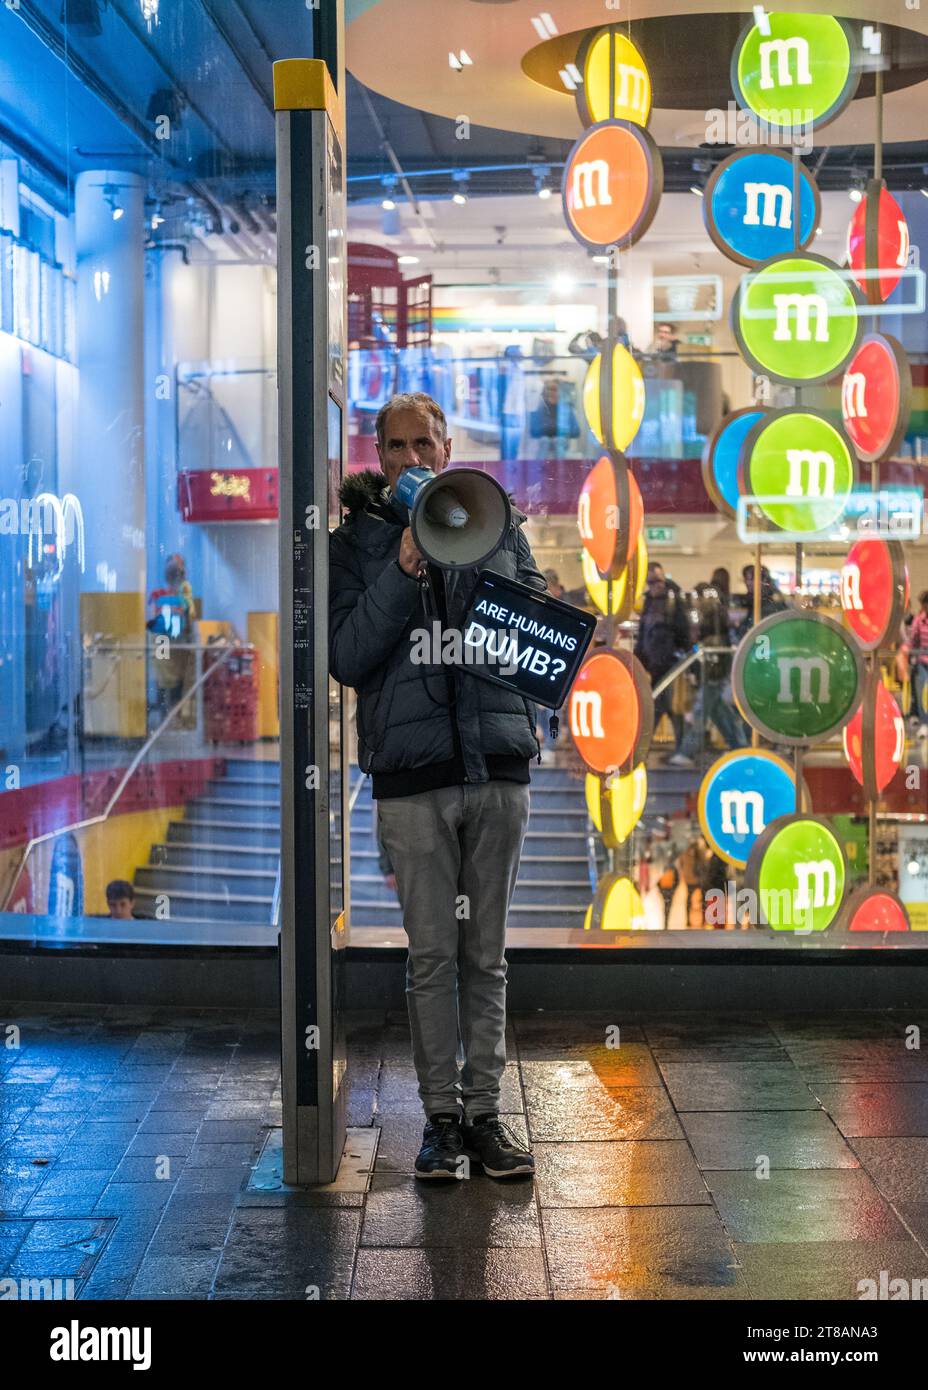 Un homme avec un mégaphone se tient à Leicester Square tenant un panneau disant "les humains sont stupides" - le centre de Londres, la liberté d'expression, des spectacles de rue drôles. Banque D'Images